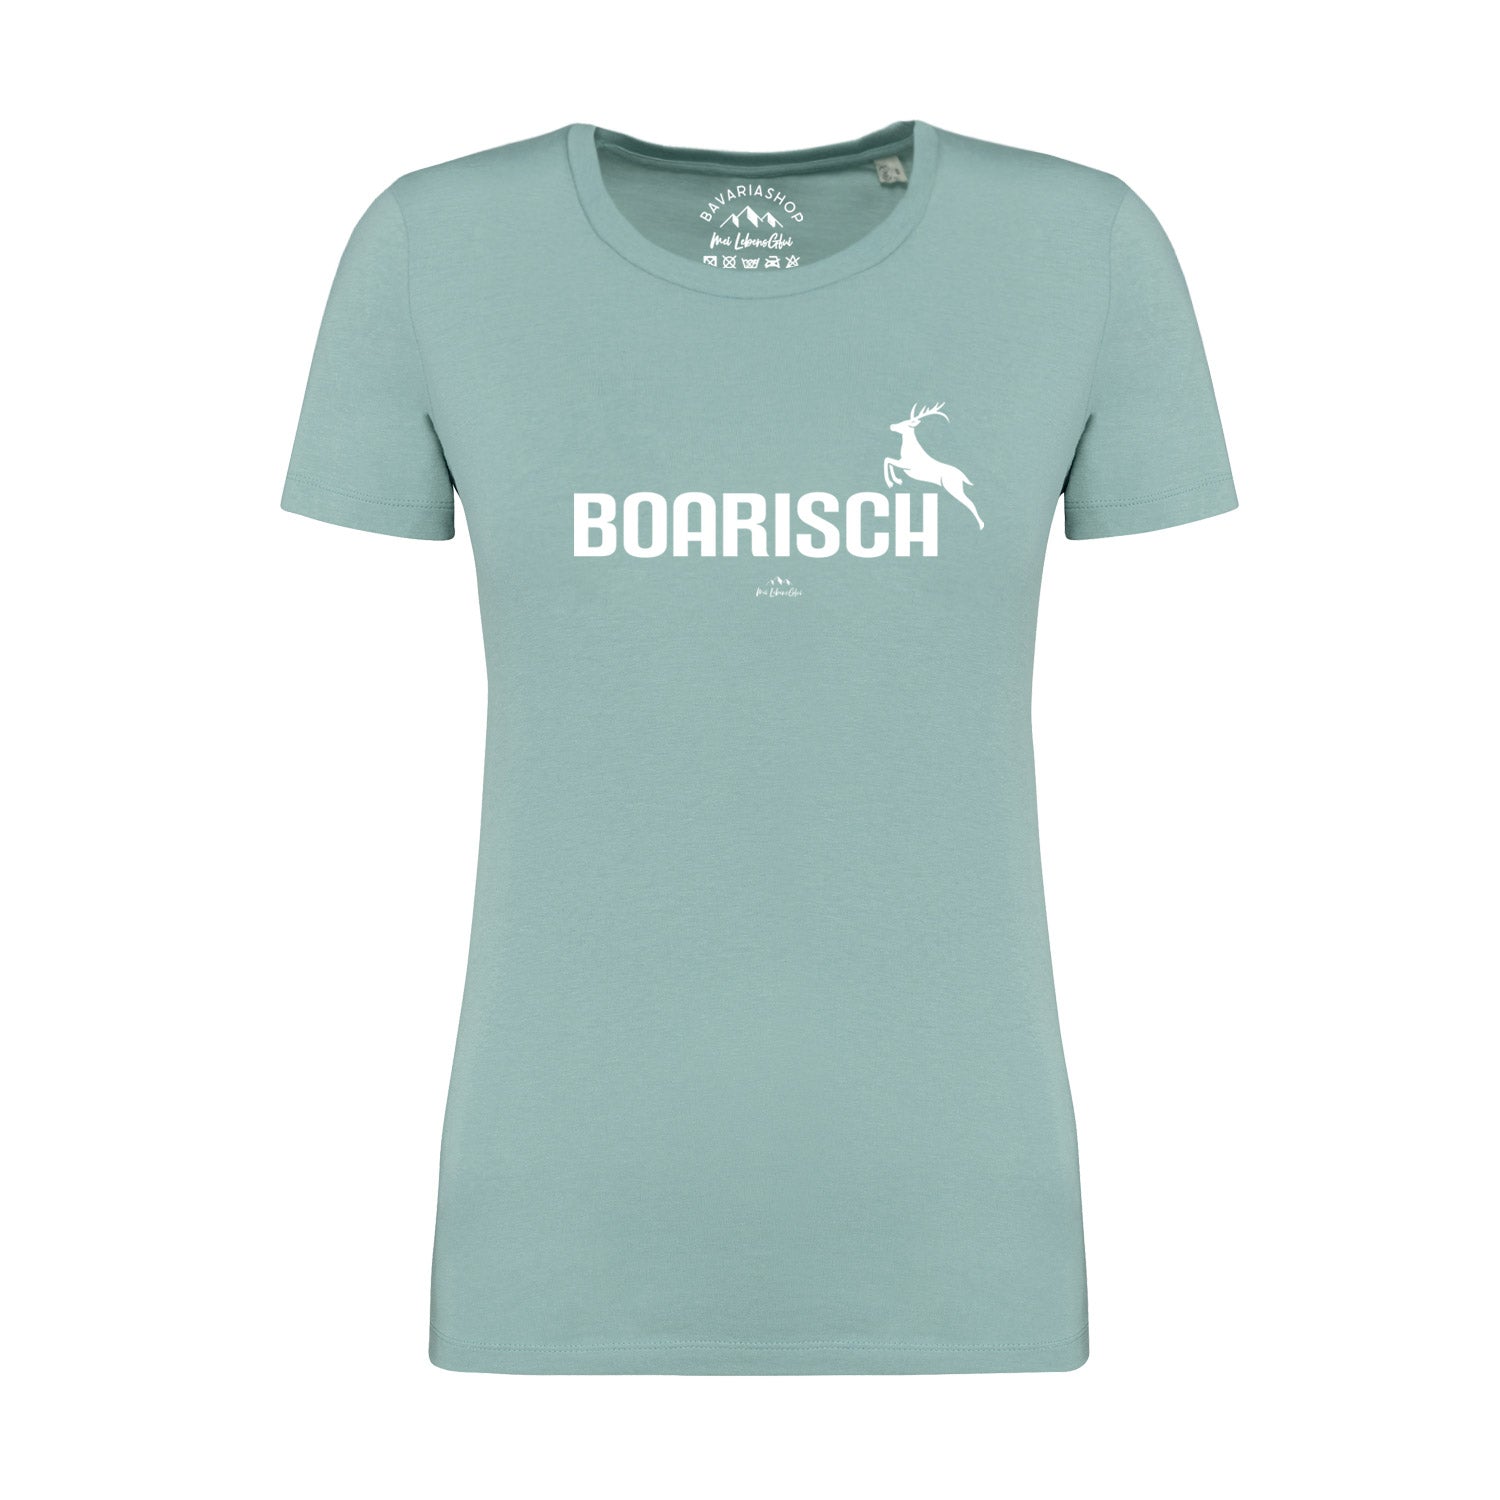 Damen T-Shirt "Boarisch"